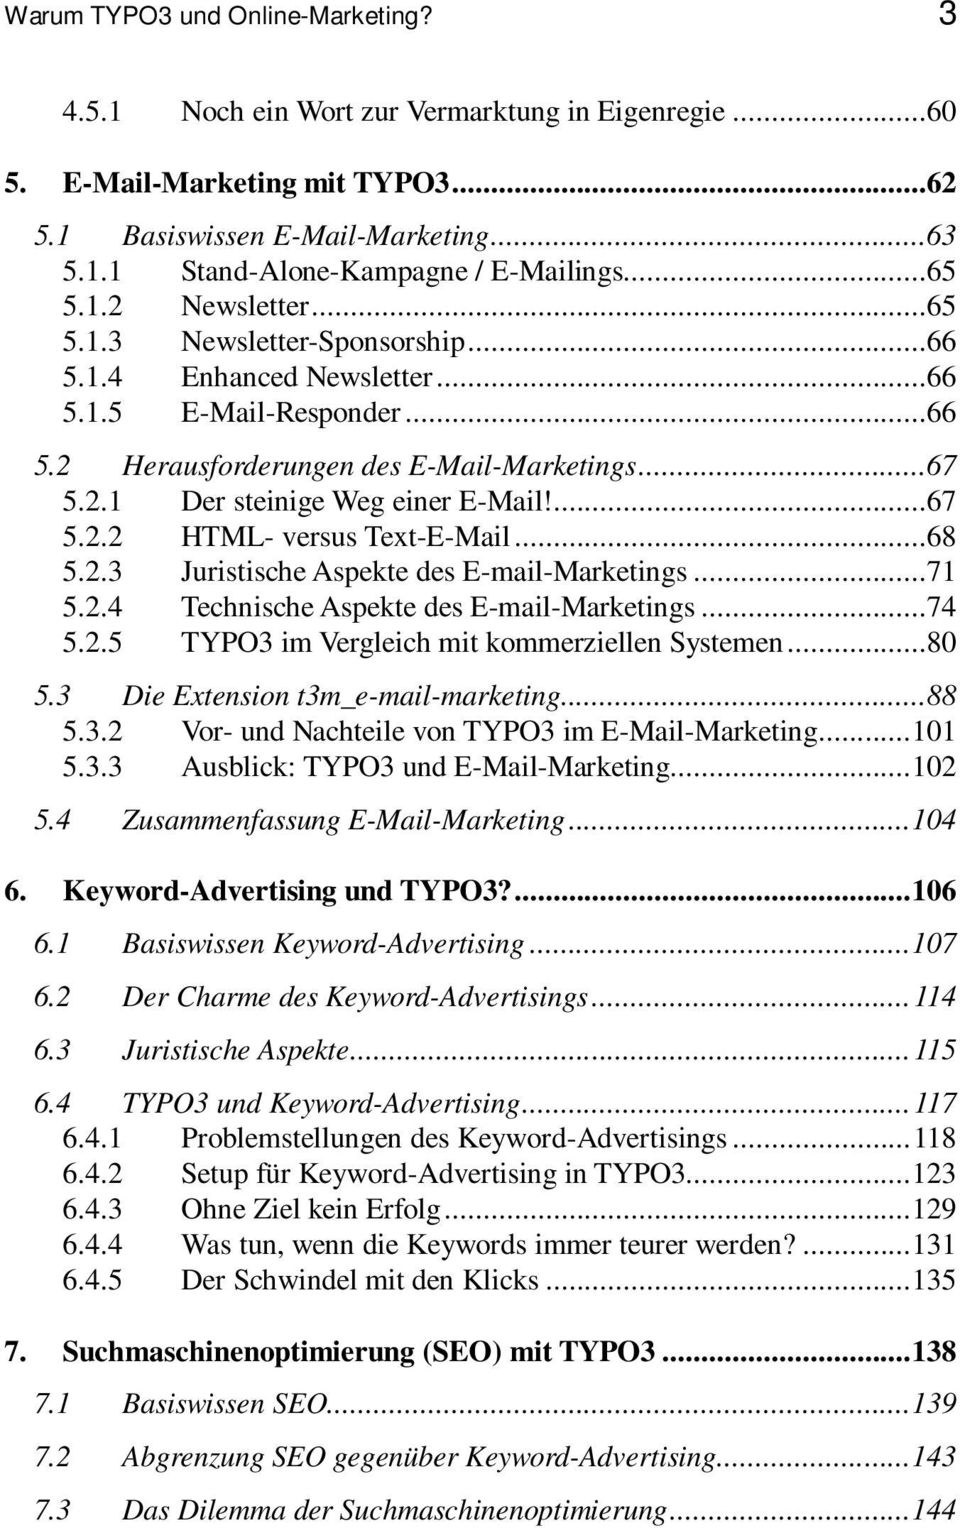 ...67 5.2.2 HTML- versus Text-E-Mail...68 5.2.3 Juristische Aspekte des E-mail-Marketings...71 5.2.4 Technische Aspekte des E-mail-Marketings...74 5.2.5 TYPO3 im Vergleich mit kommerziellen Systemen.